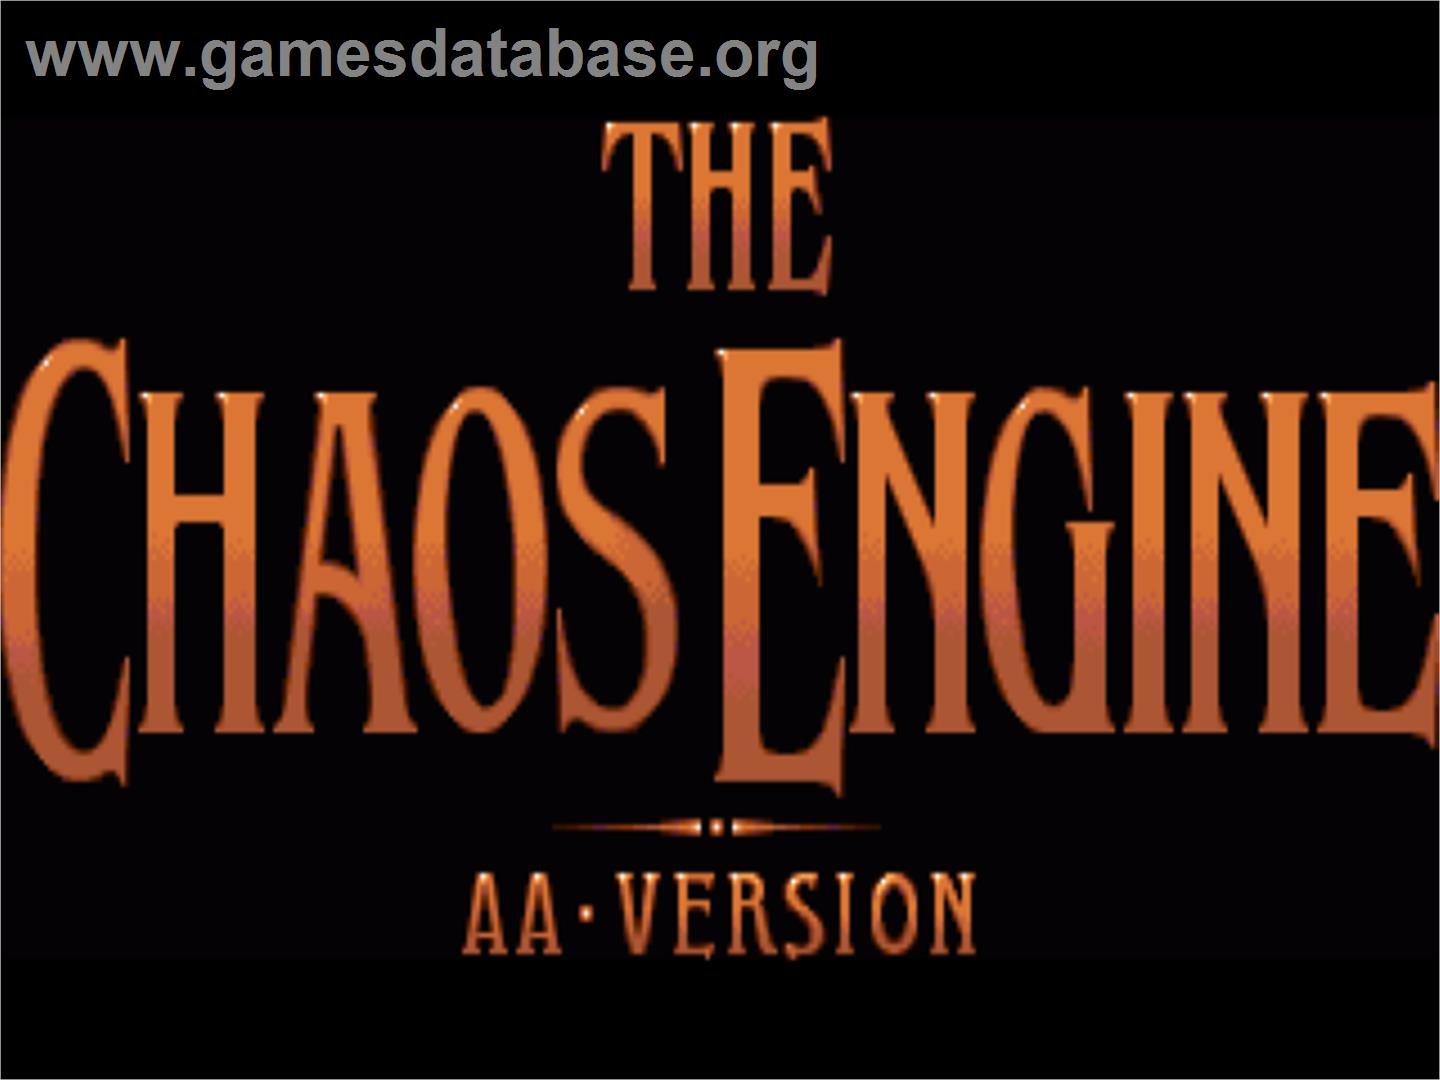 Chaos Engine - Commodore Amiga - Artwork - Title Screen